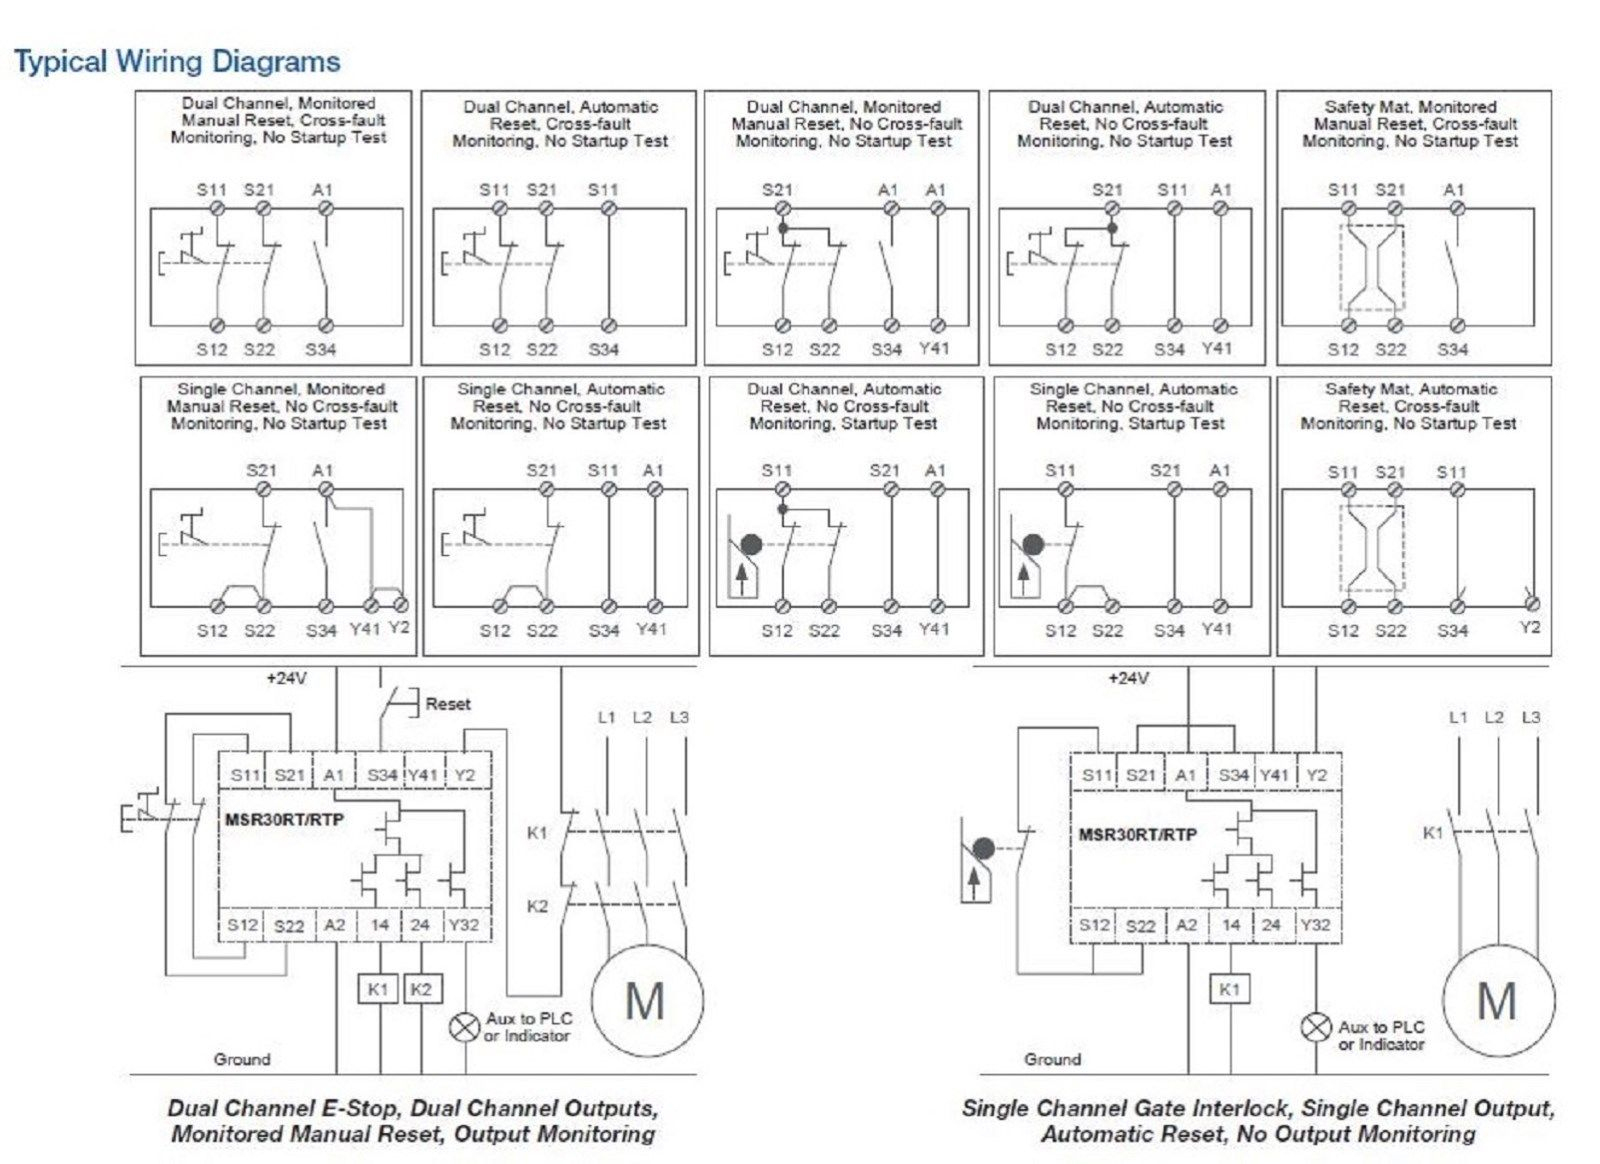 Allen Bradley Safety Relay Wiring Diagram | Wiring Diagram